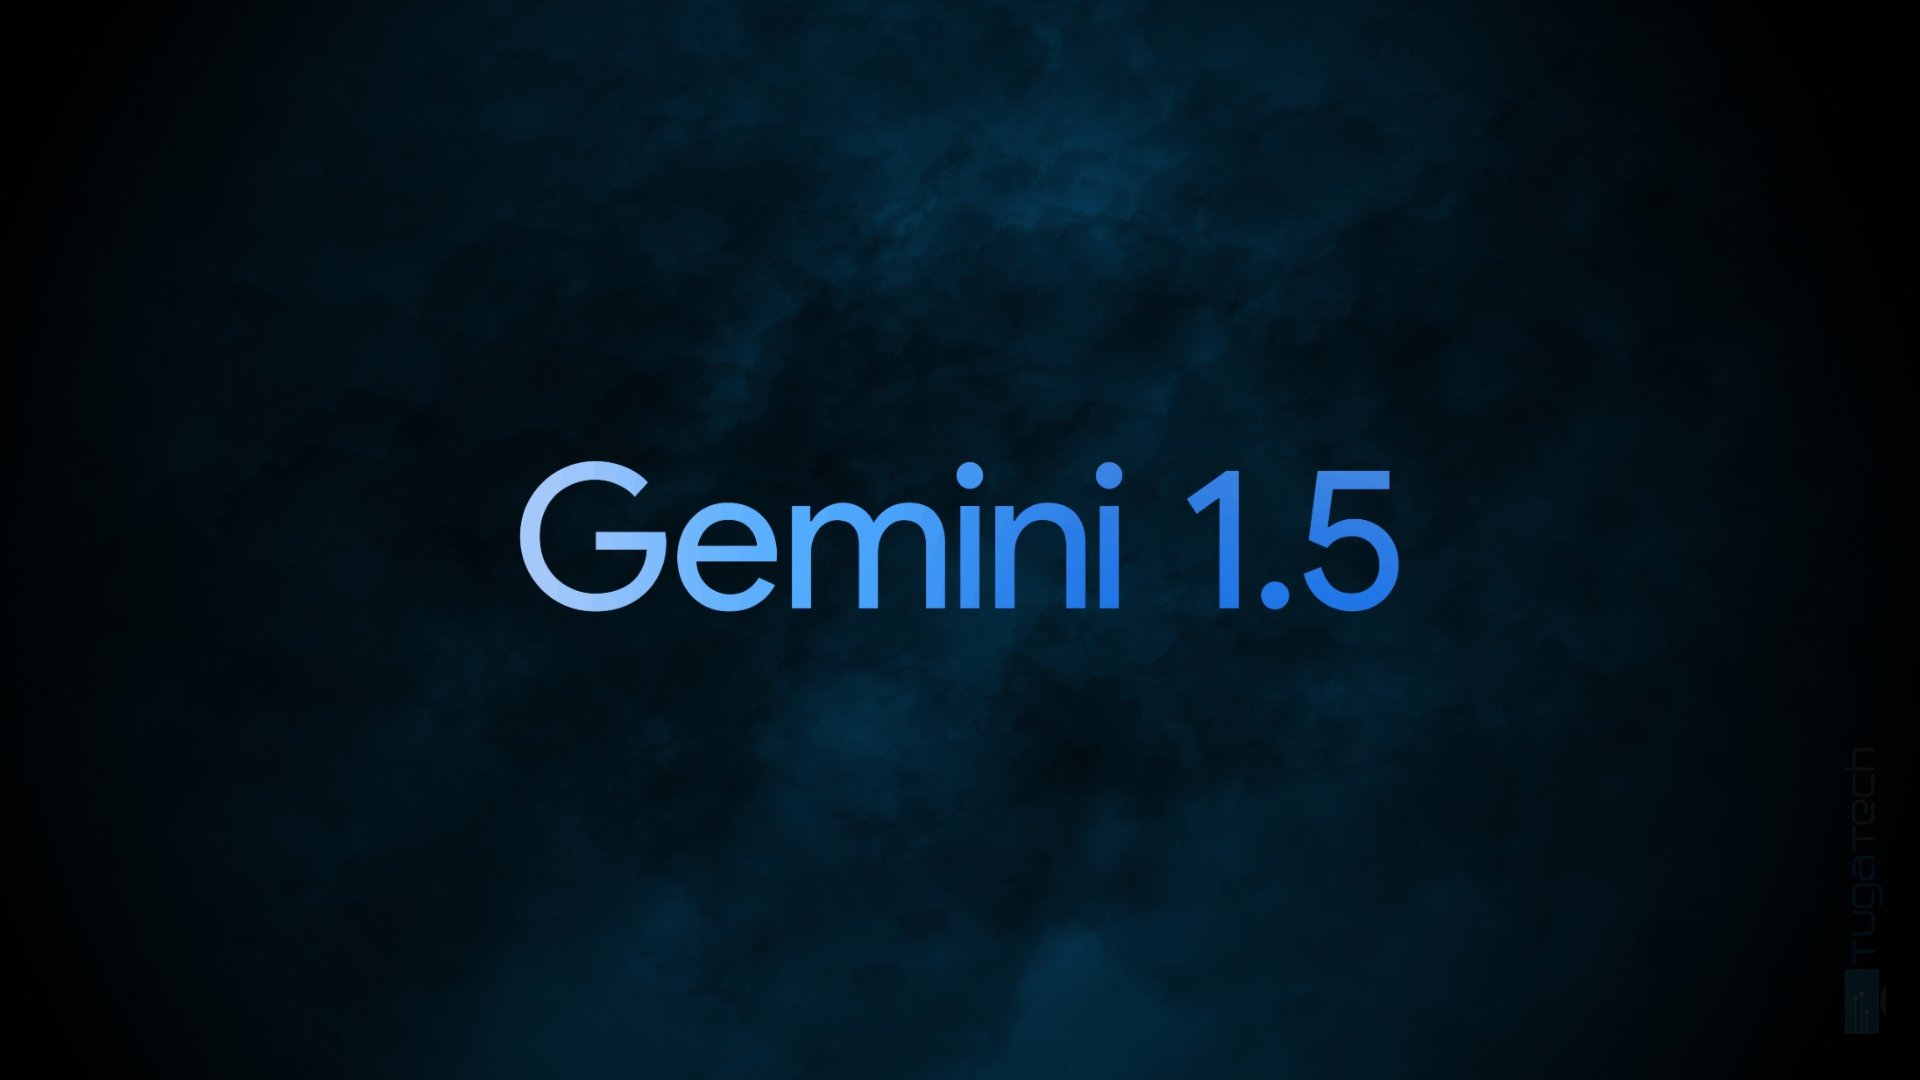 Google revela novo modelo Gemini 1.5 com várias melhorias